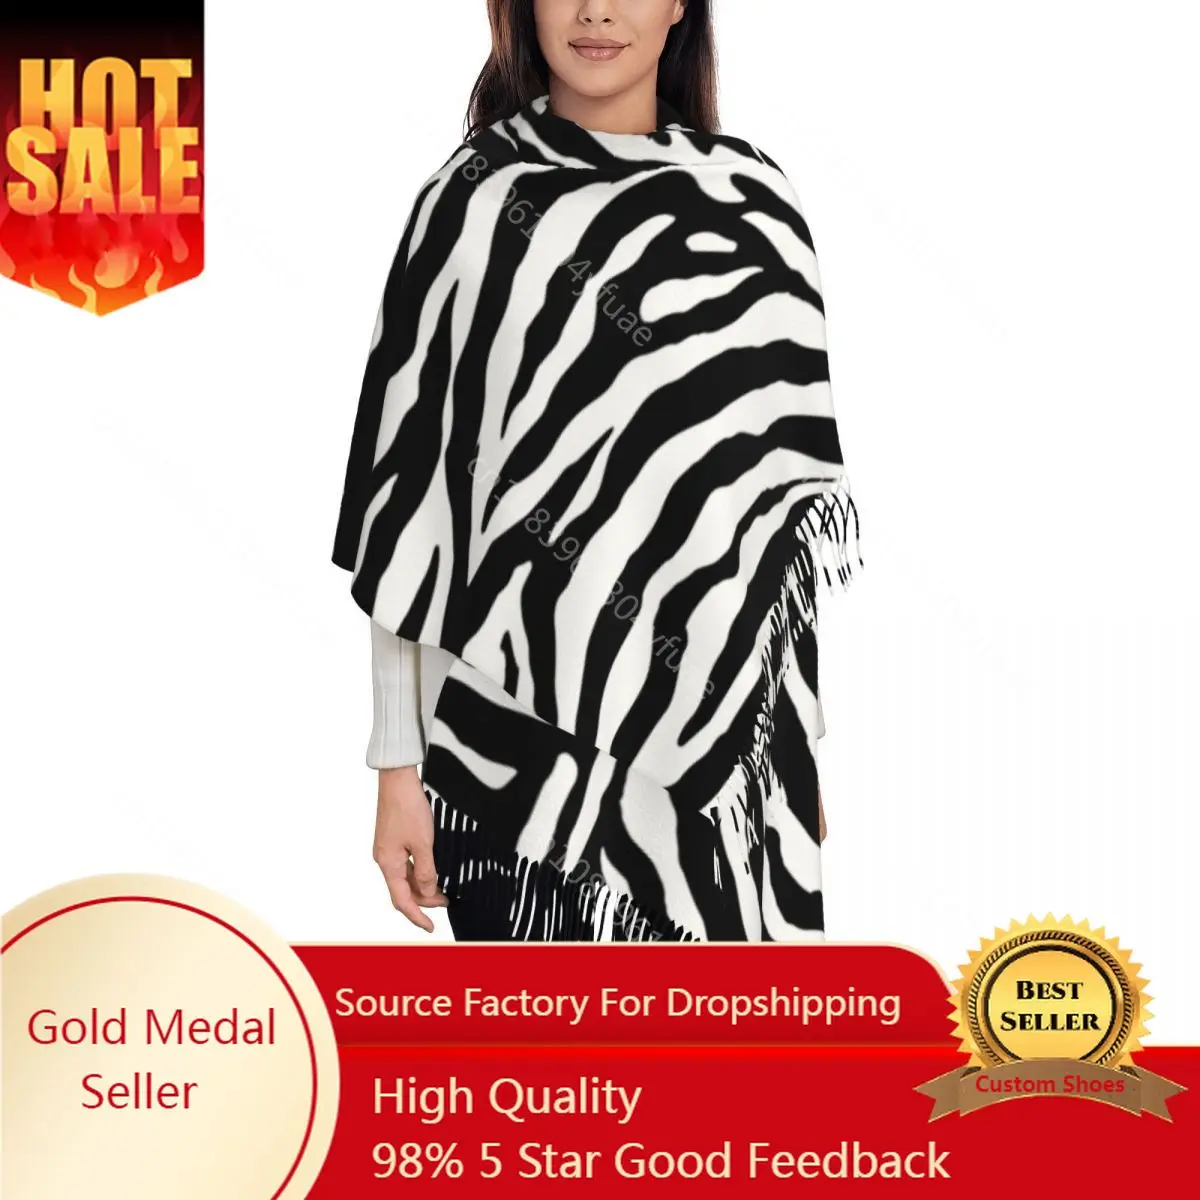 

Шаль с принтом зебры женская, теплый большой длинный шарф с геометрическими полосками, с кисточками, с принтом в виде морских шалей, черная белая